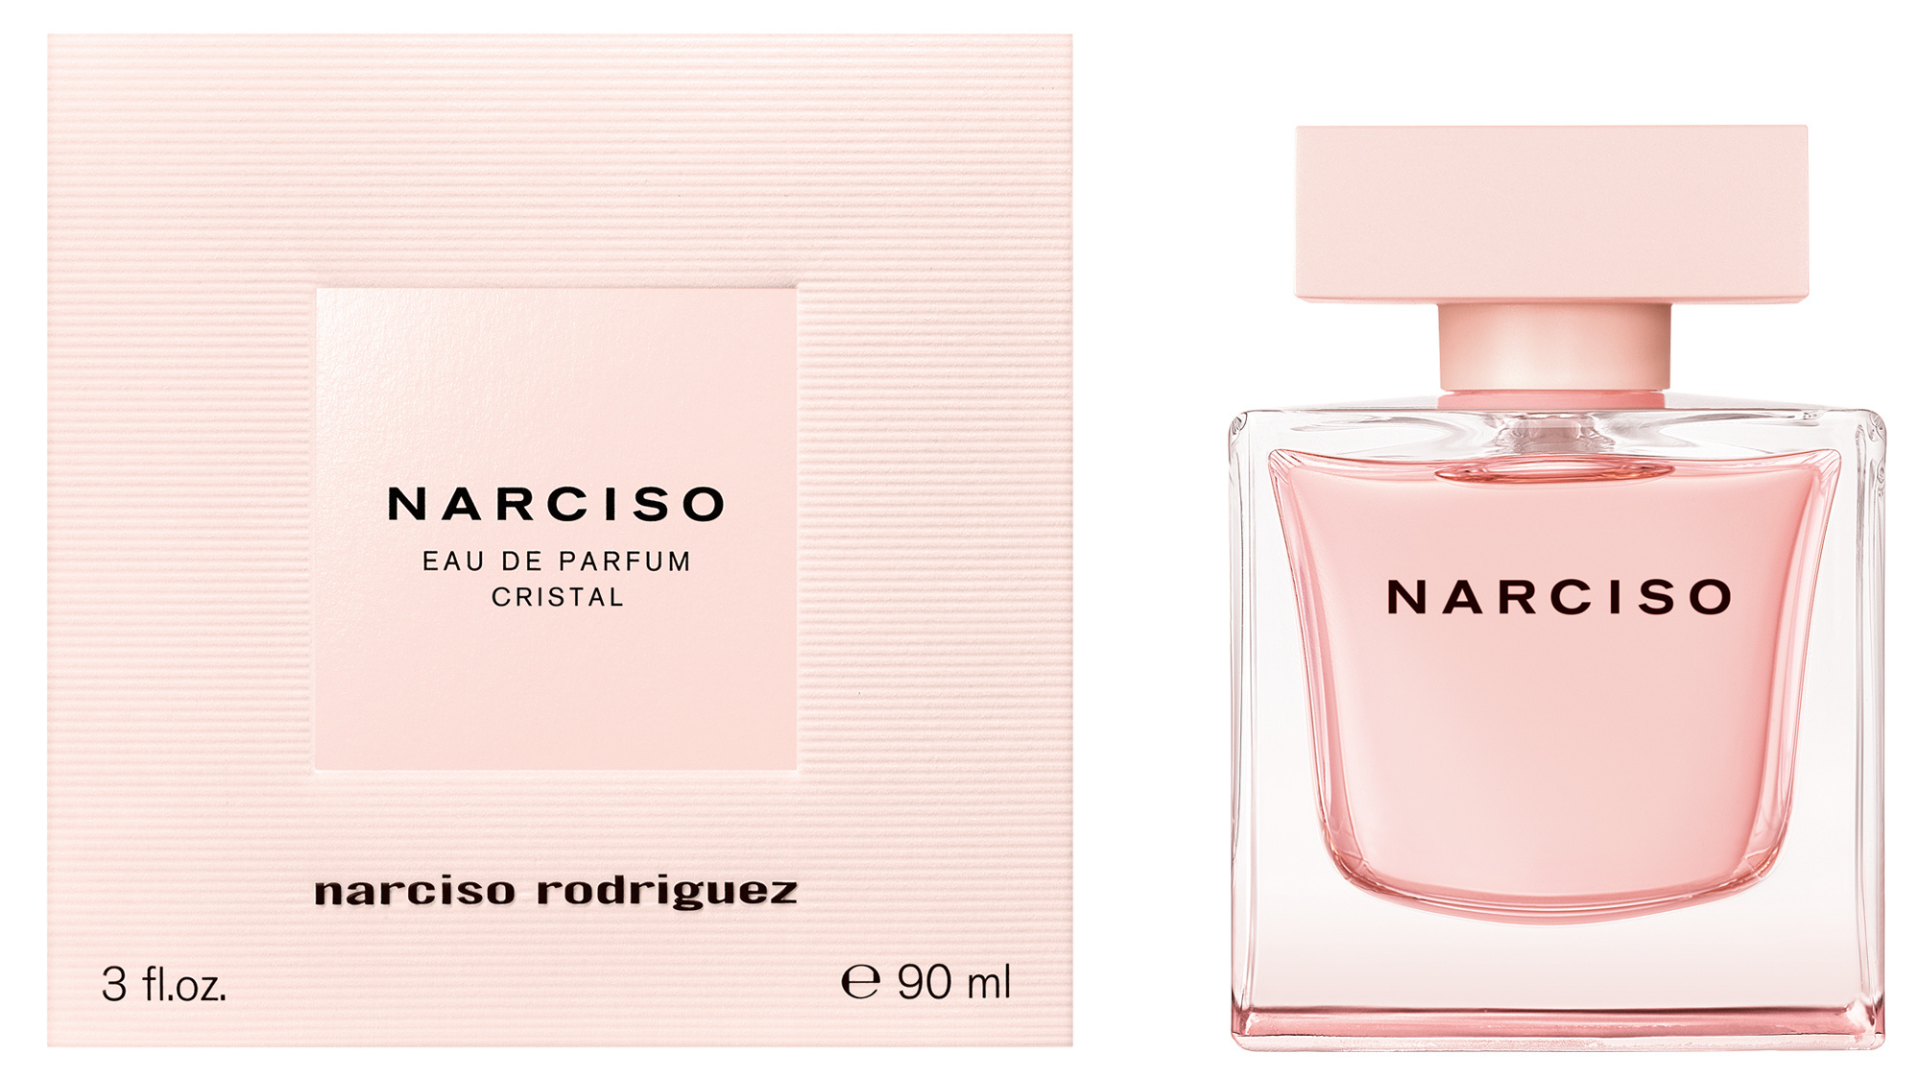 Narciso Rodriguez introduces NARCISO eau de parfum cristal › Hong